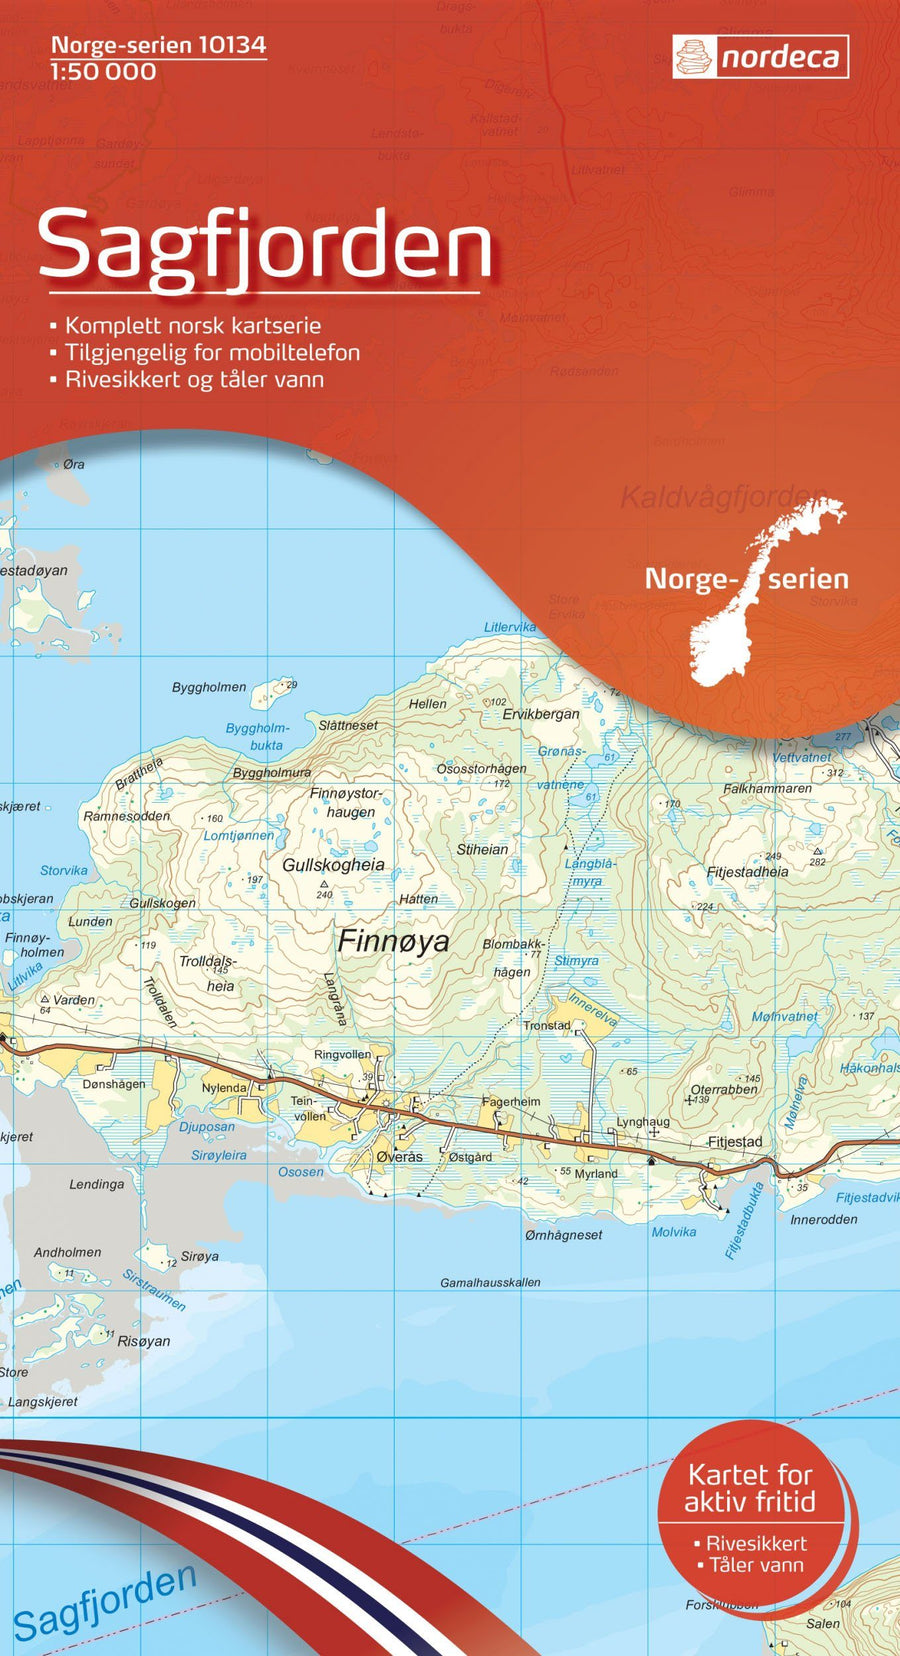 Carte de randonnée n° 10134 - Sagfjorden (Norvège) | Nordeca - Norge-serien carte pliée Nordeca 